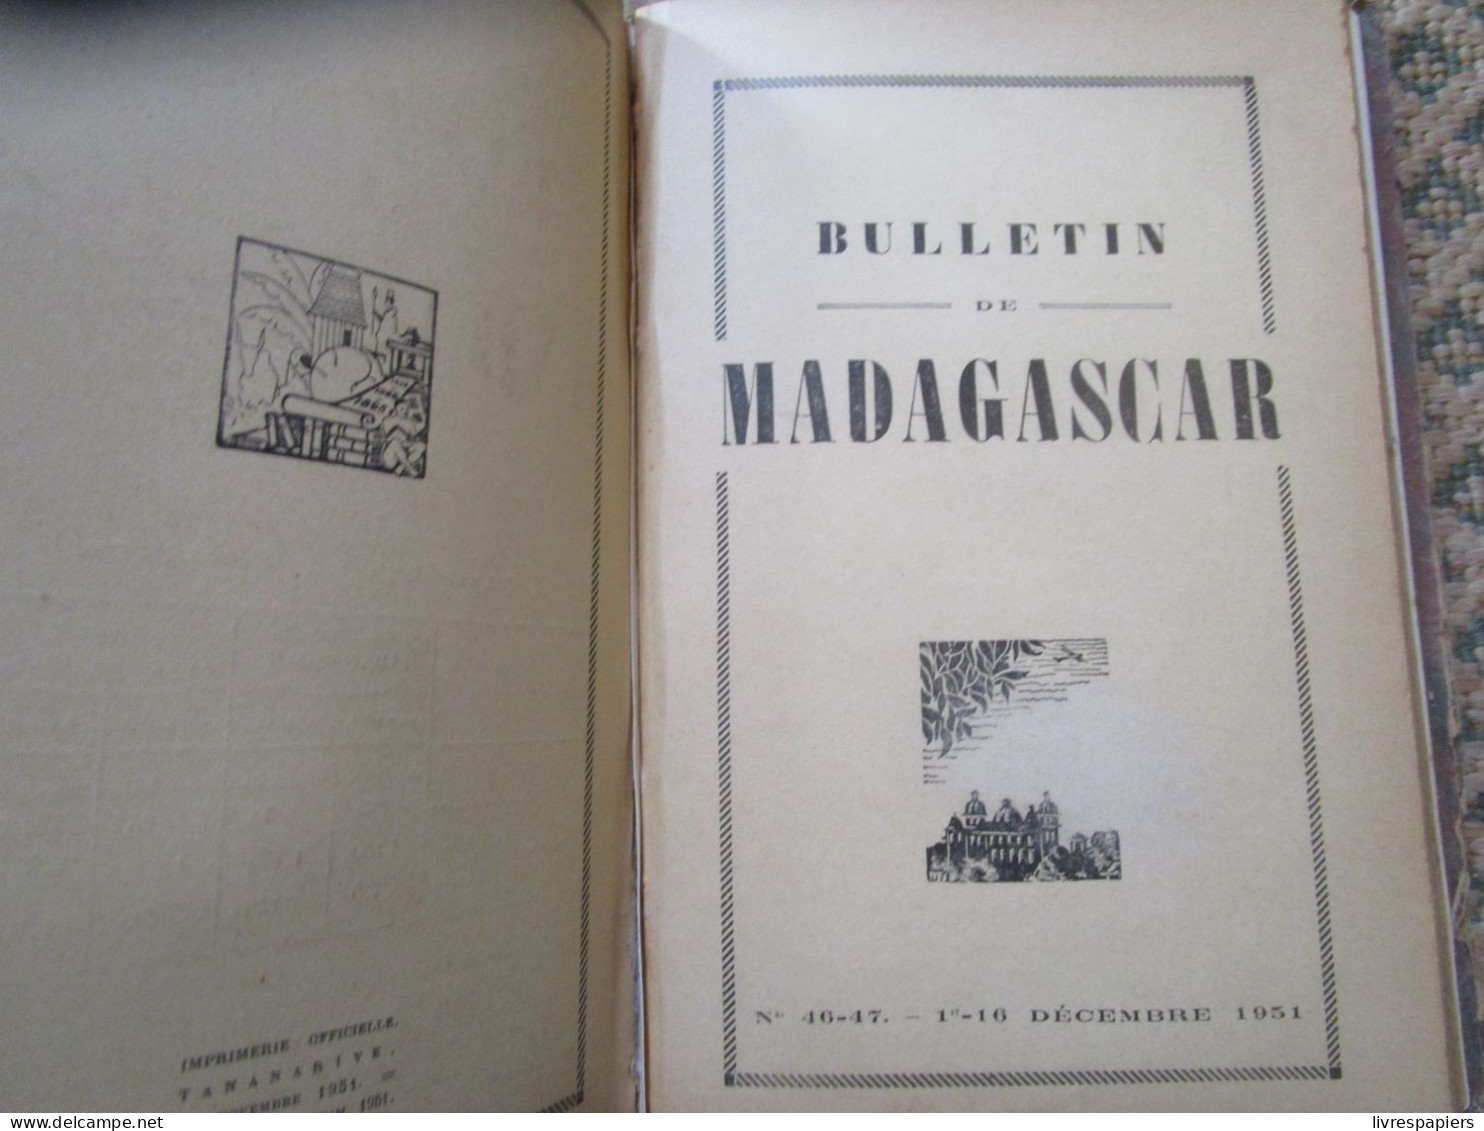 Madagascar BULLETIN DE MADAGASCAR 1951 Complet Janv à Dec , Relier Couvertures Conservées - History